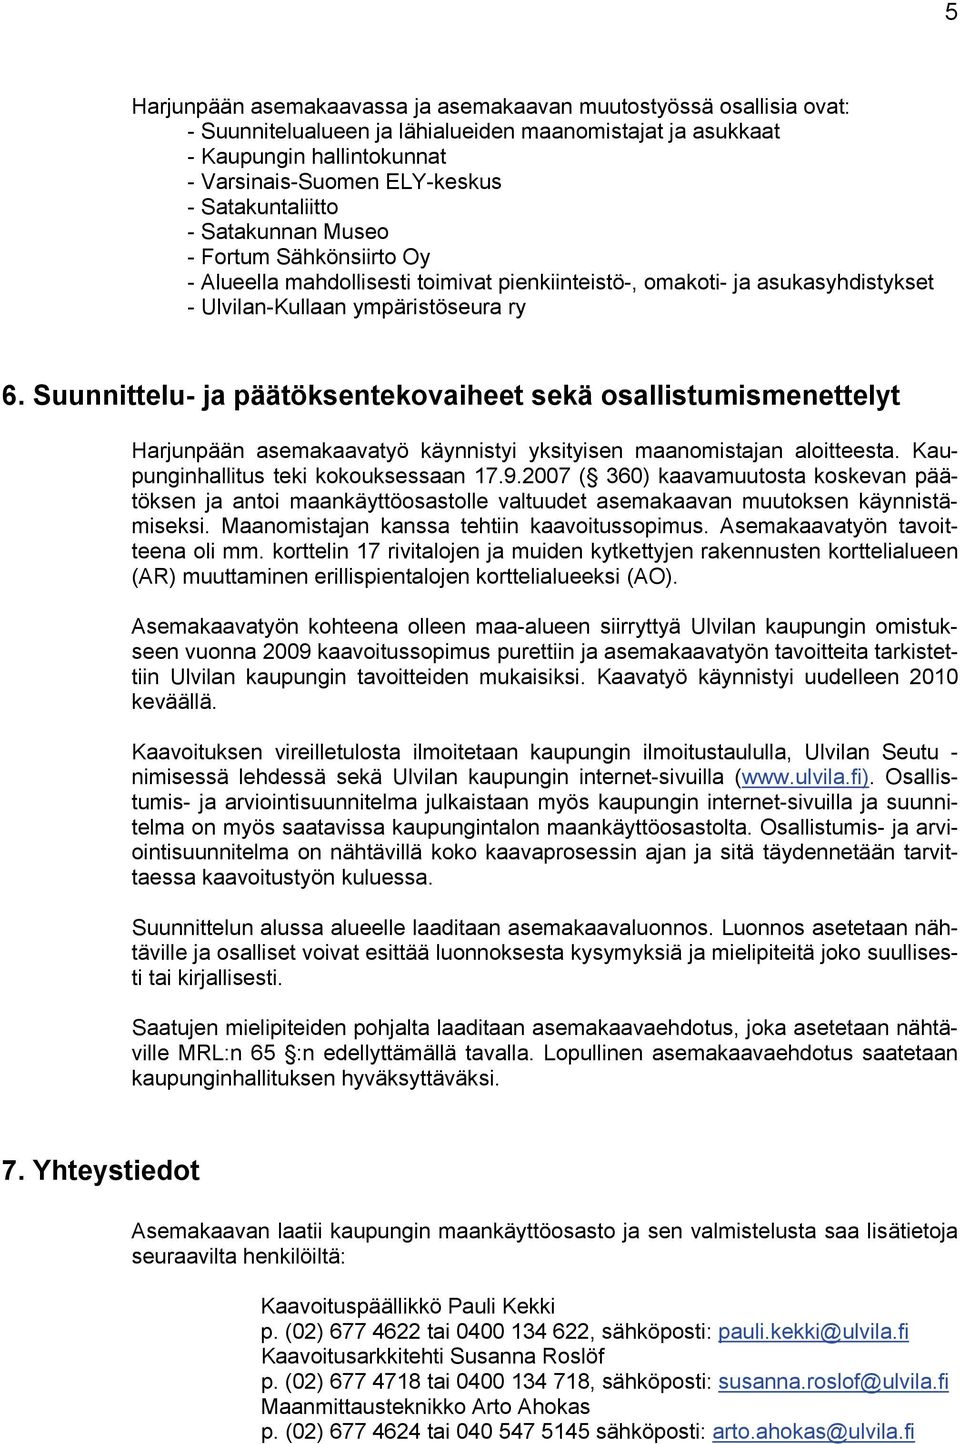 Suunnittelu- ja päätöksentekovaiheet sekä osallistumismenettelyt Harjunpään asemakaavatyö käynnistyi yksityisen maanomistajan aloitteesta. Kaupunginhallitus teki kokouksessaan 7.9.